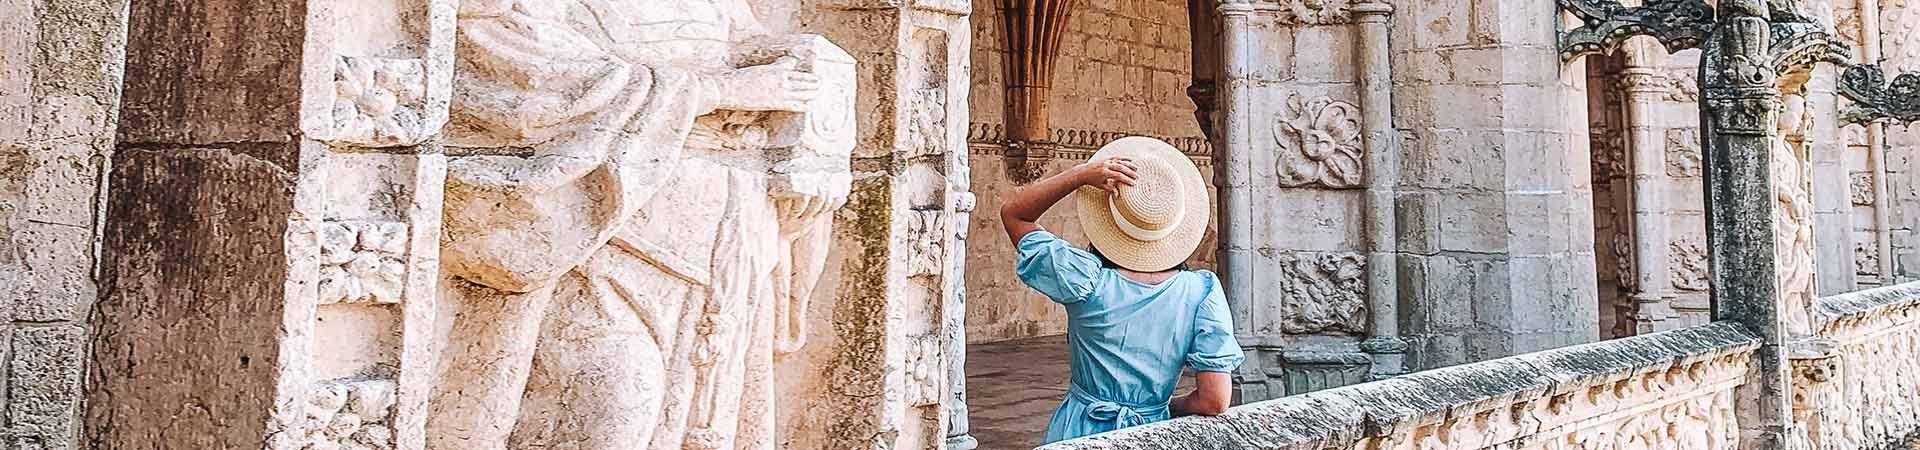 Immagine composta da una signora di spalle, che contempla un monumento di pietra bianca. La signora ha i capelli neri e ricci e indossa un vestito blu e un cappello di paglia beige che tiene nella mano sinistra.